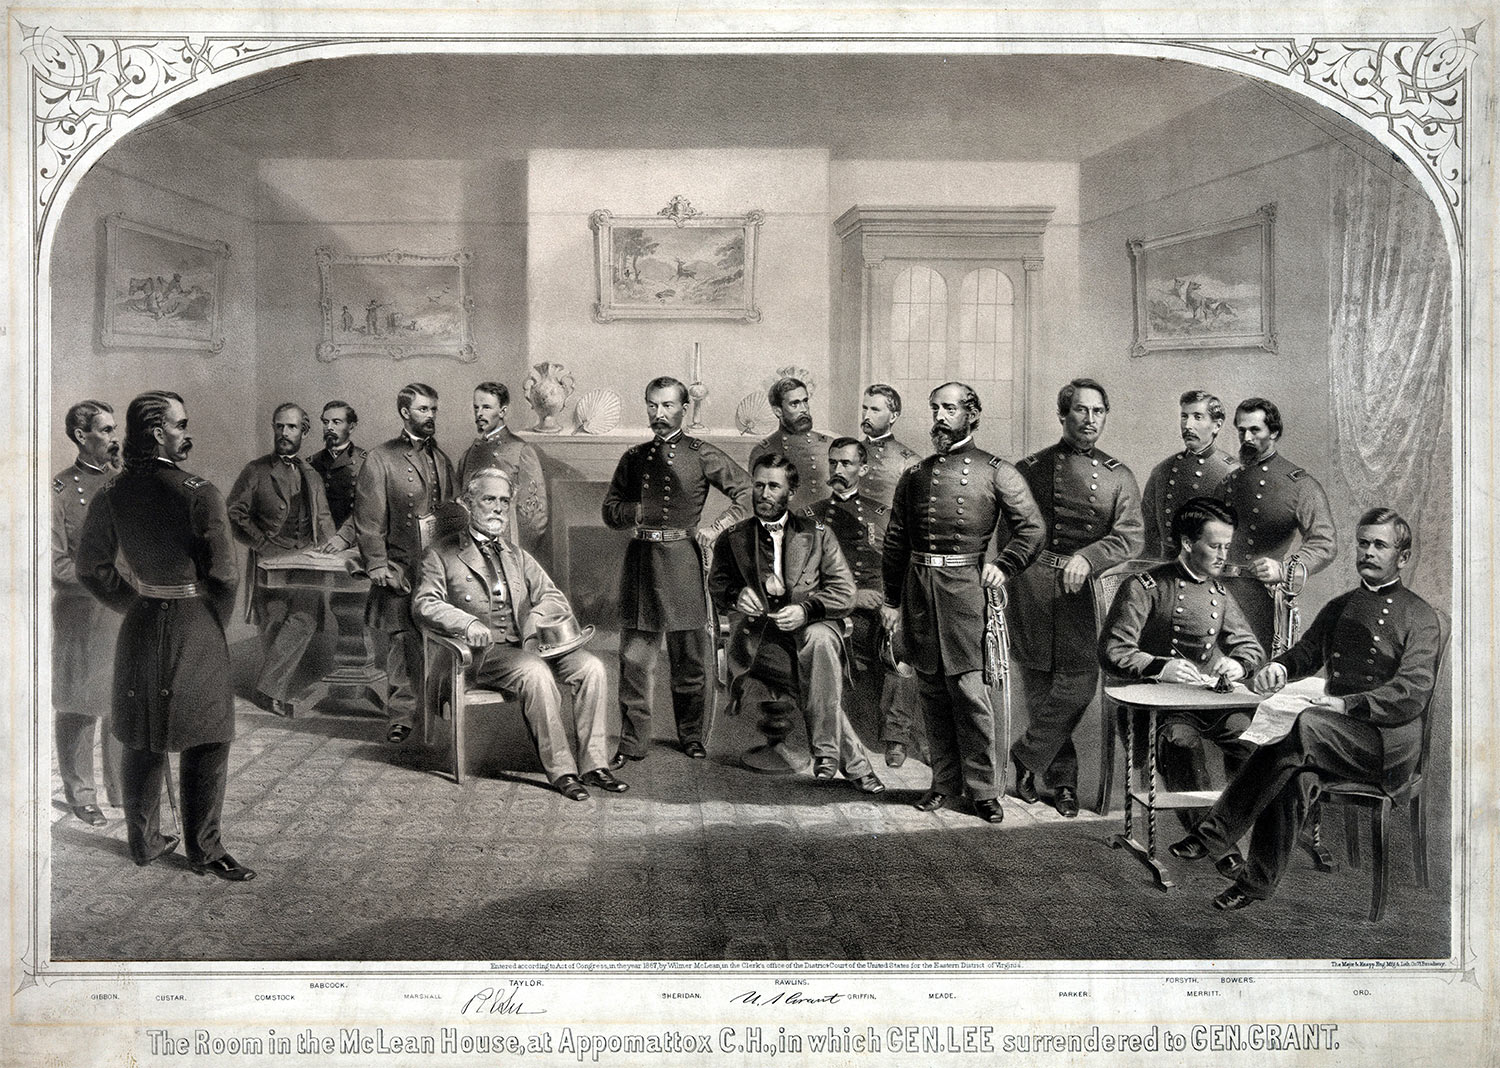 General Lee surrenders to General Grant